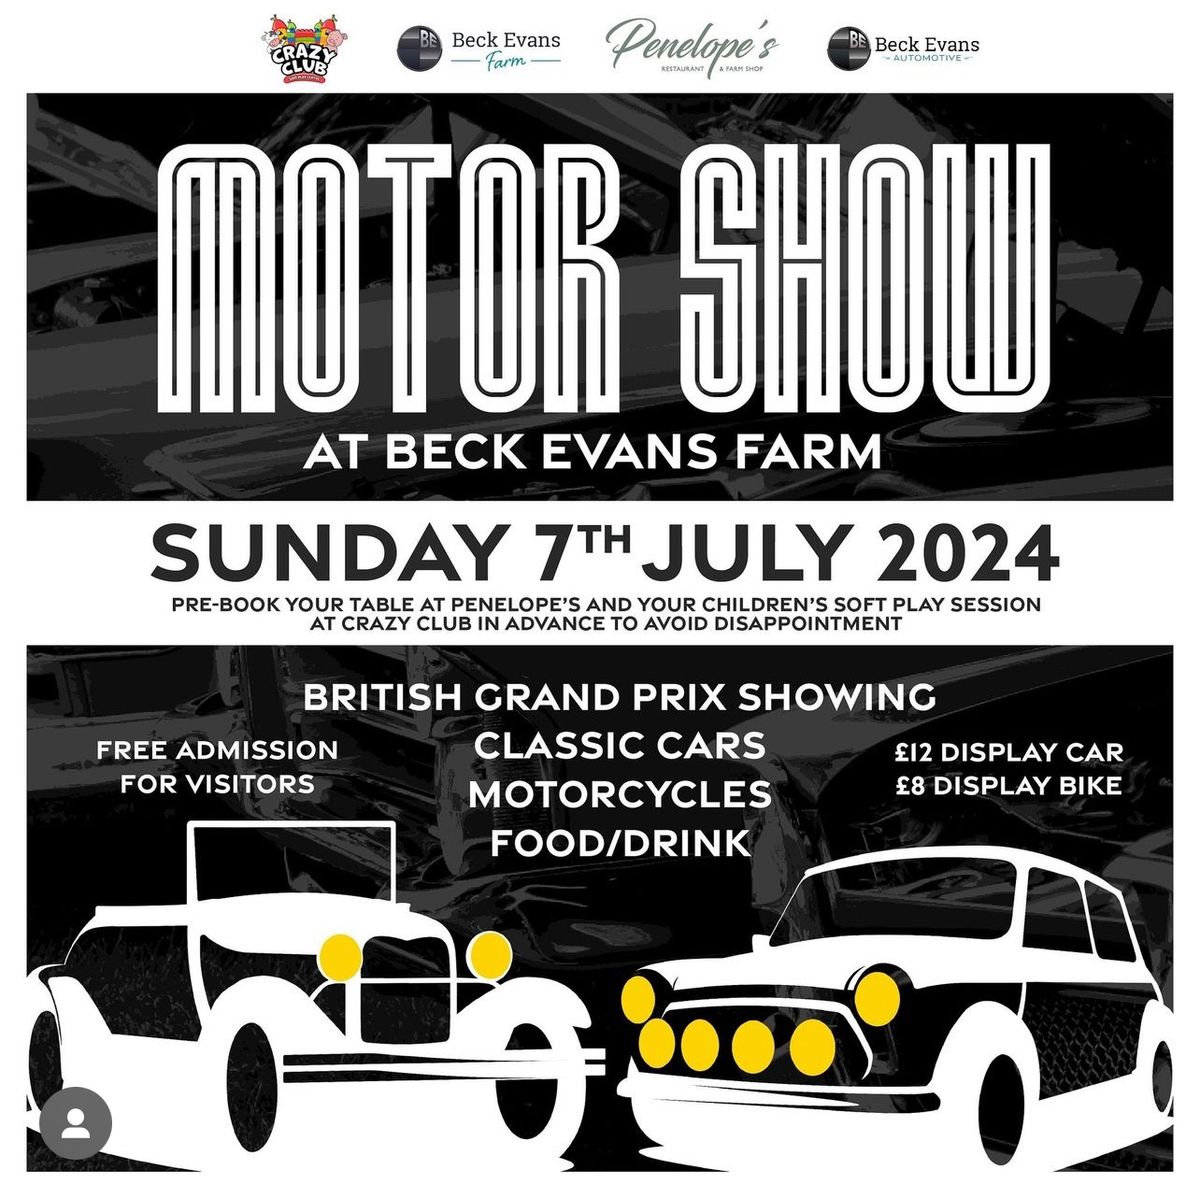 Beck Evans Motor Show